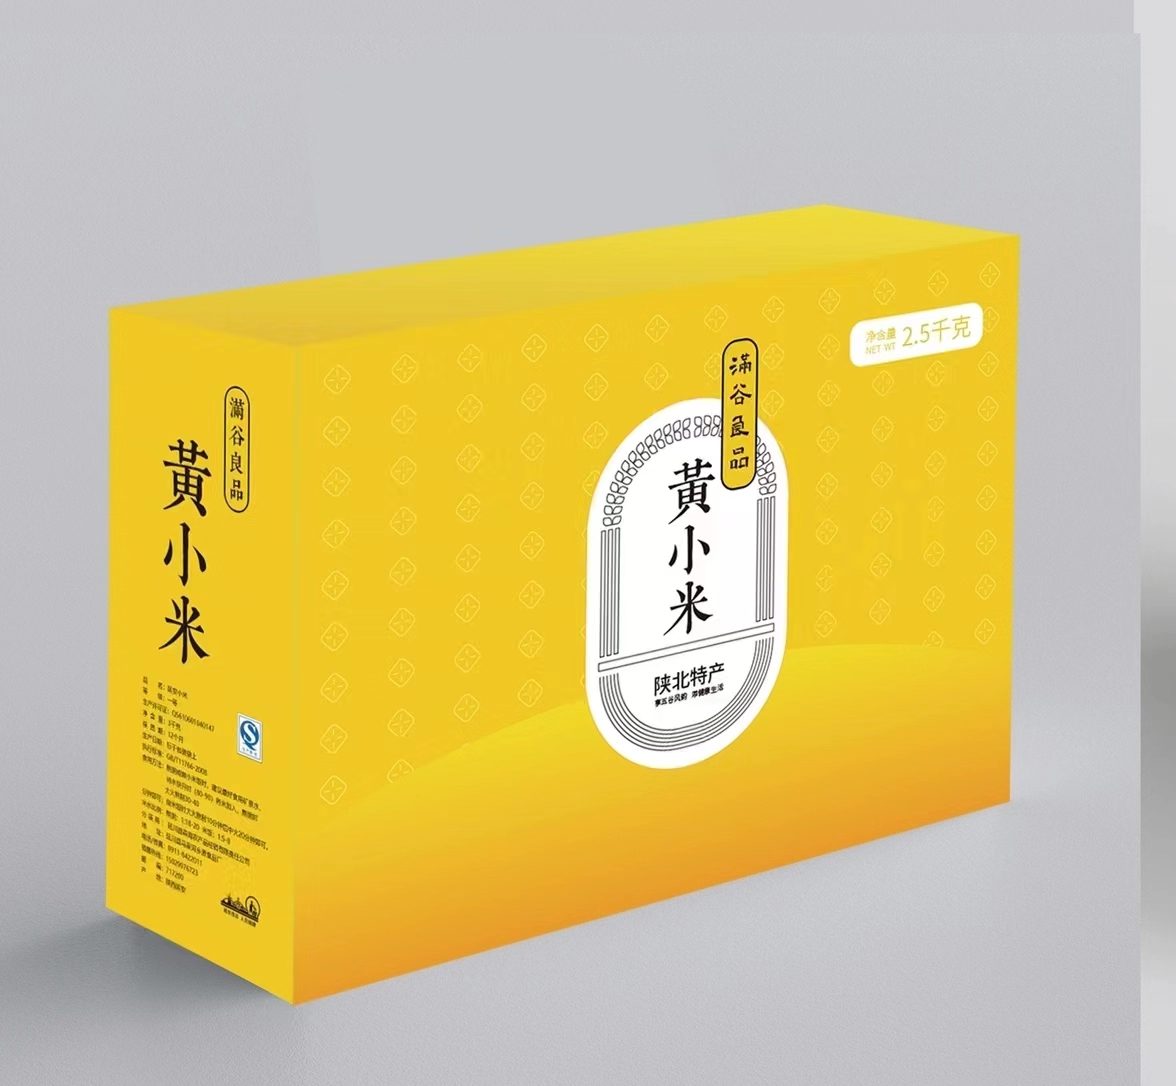 【满谷良品】新鲜陕北黄小米2.5kg礼盒装